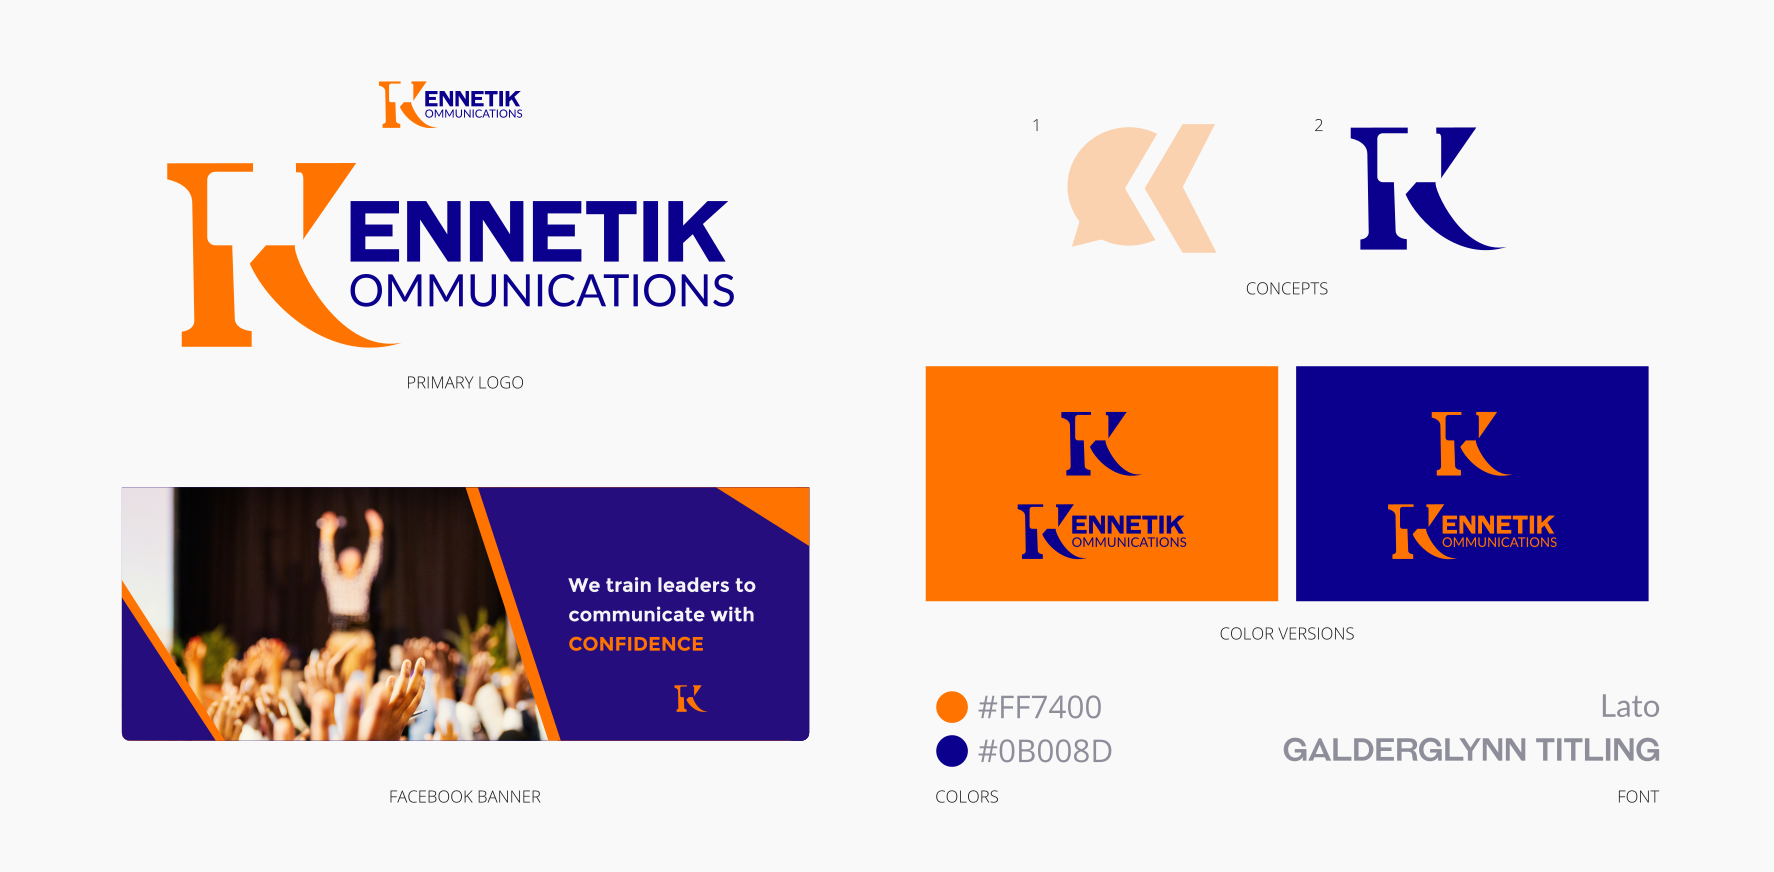 The logo design and Facebook banner for Kennetik Kommunications